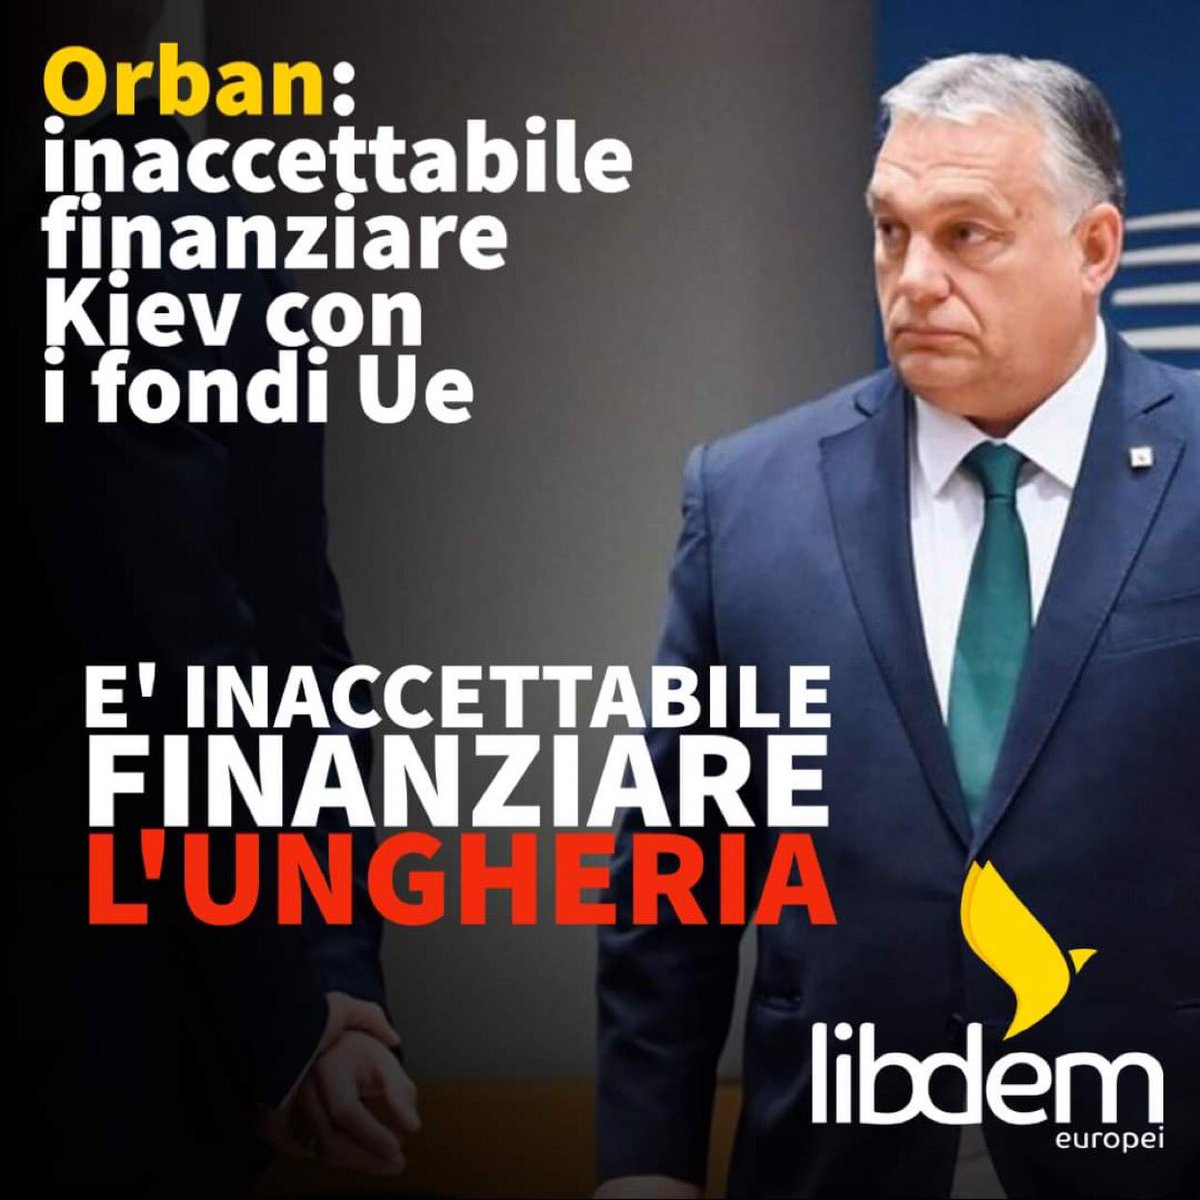 #Orban: inaccettabile finanziare l’#Ucraina con i fondi #Ue. È inaccettabile finanziare l’#Ungheria che non rispetta lo Stato diritto e i principi della #democrazia!